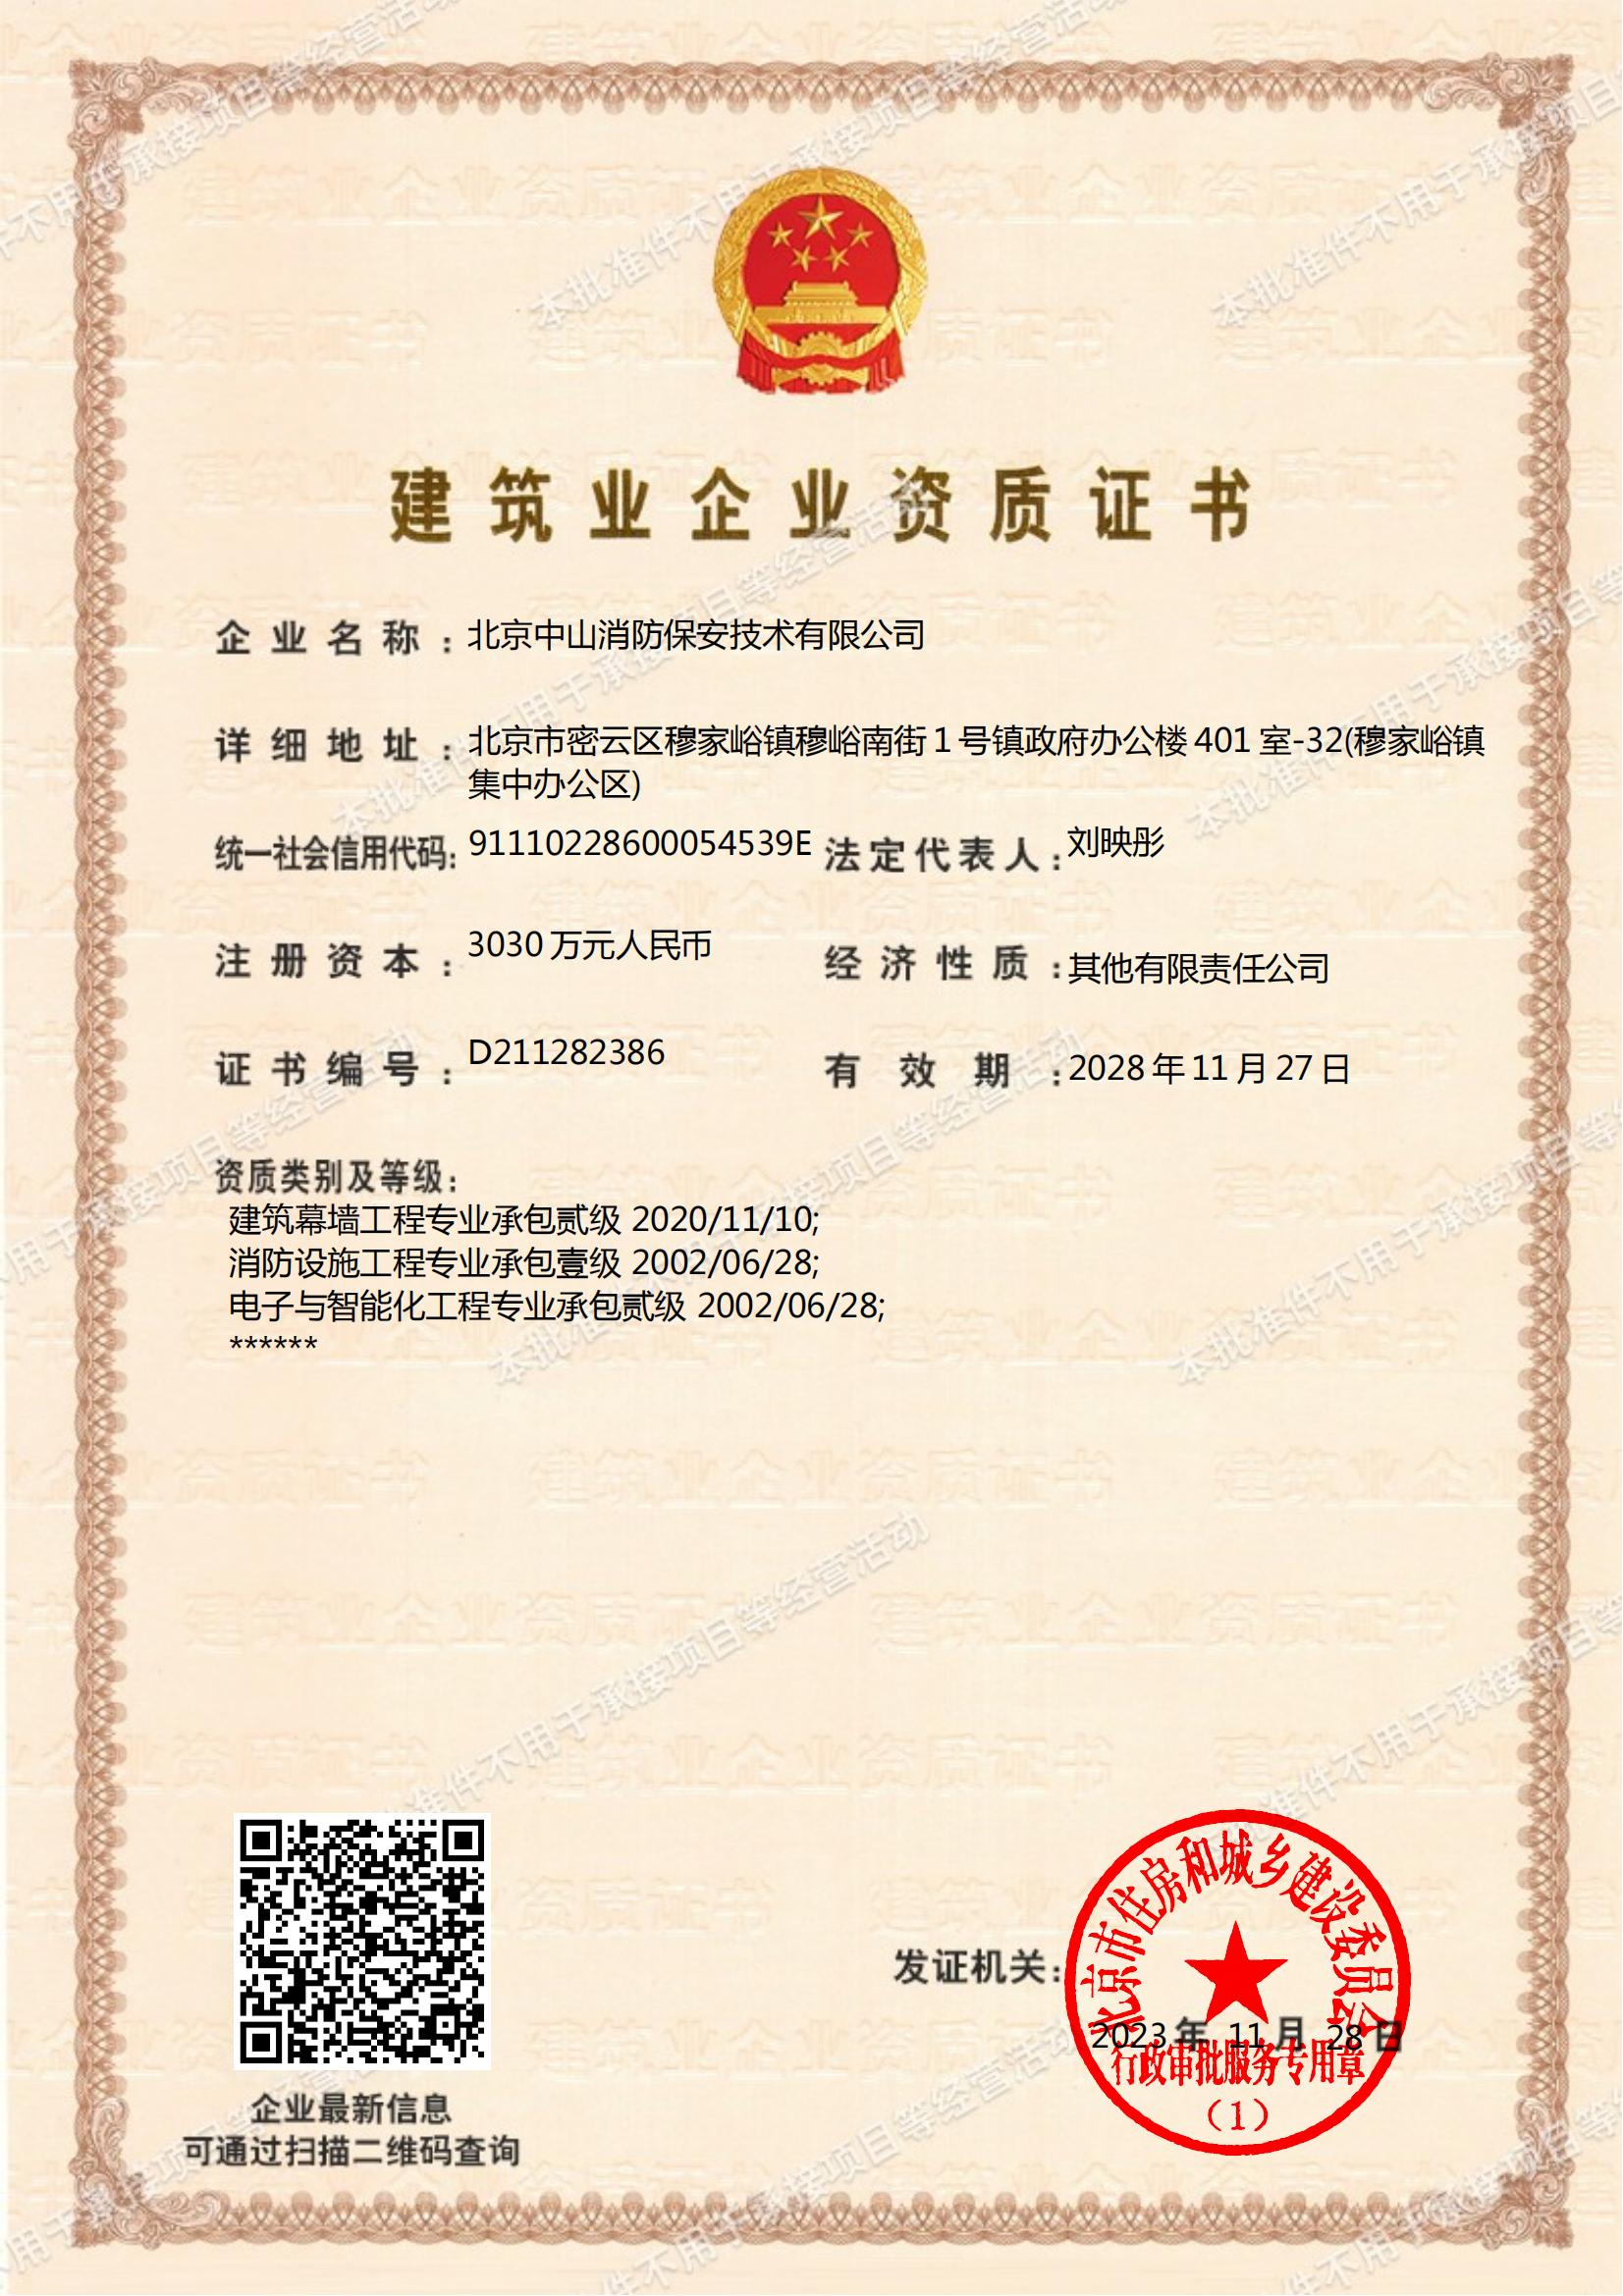 北京中山消防保安技术有限公司